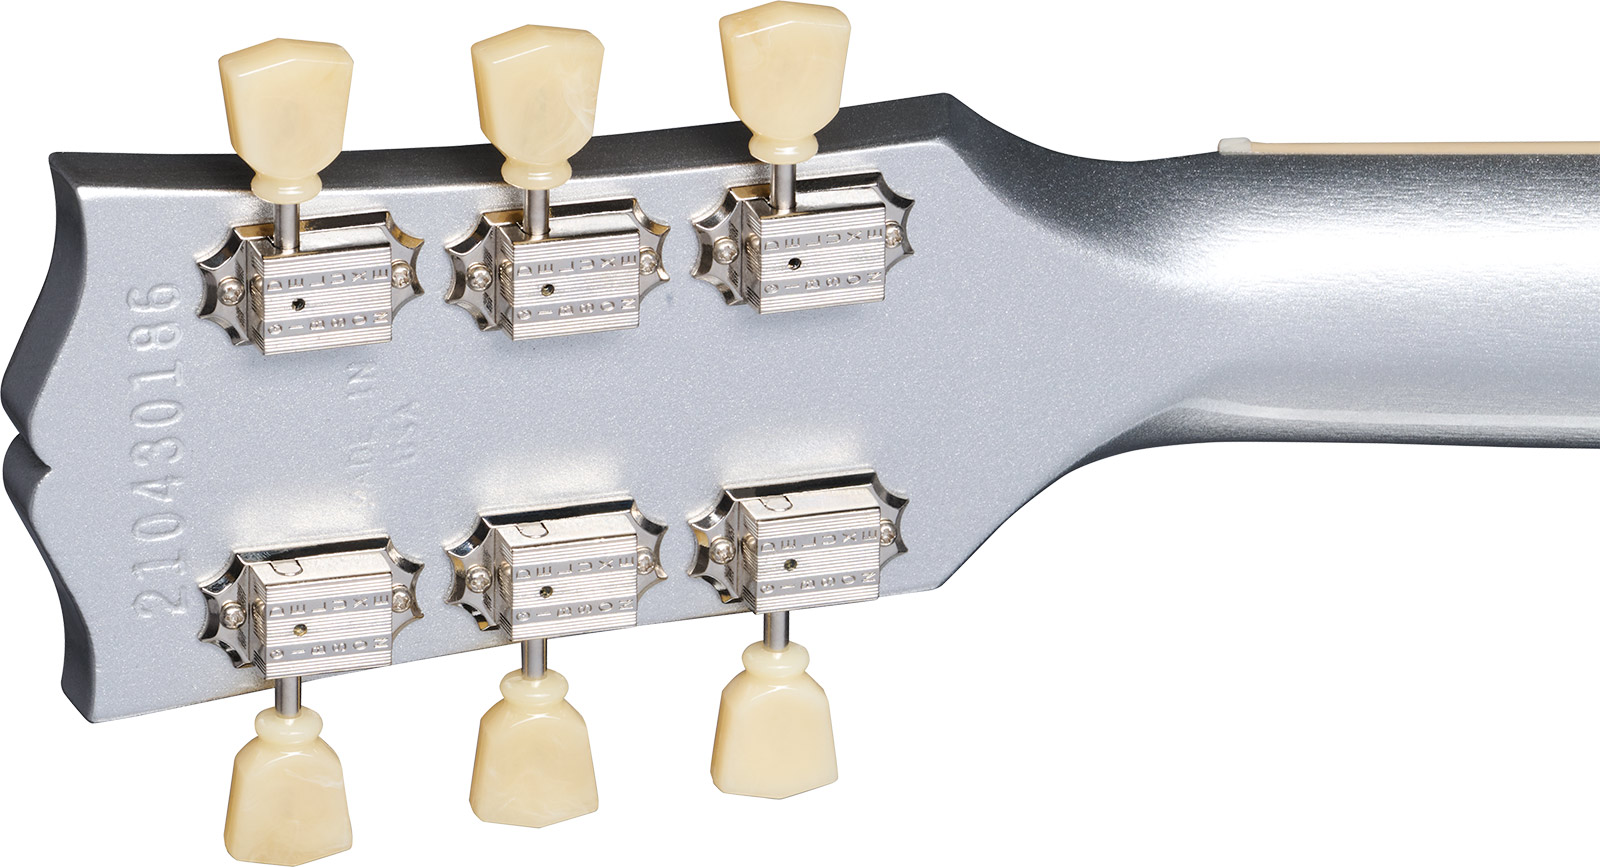 Gibson Sg Standard 1961 Custom Color 2h Ht Rw - Silver Mist - Double Cut E-Gitarre - Variation 4